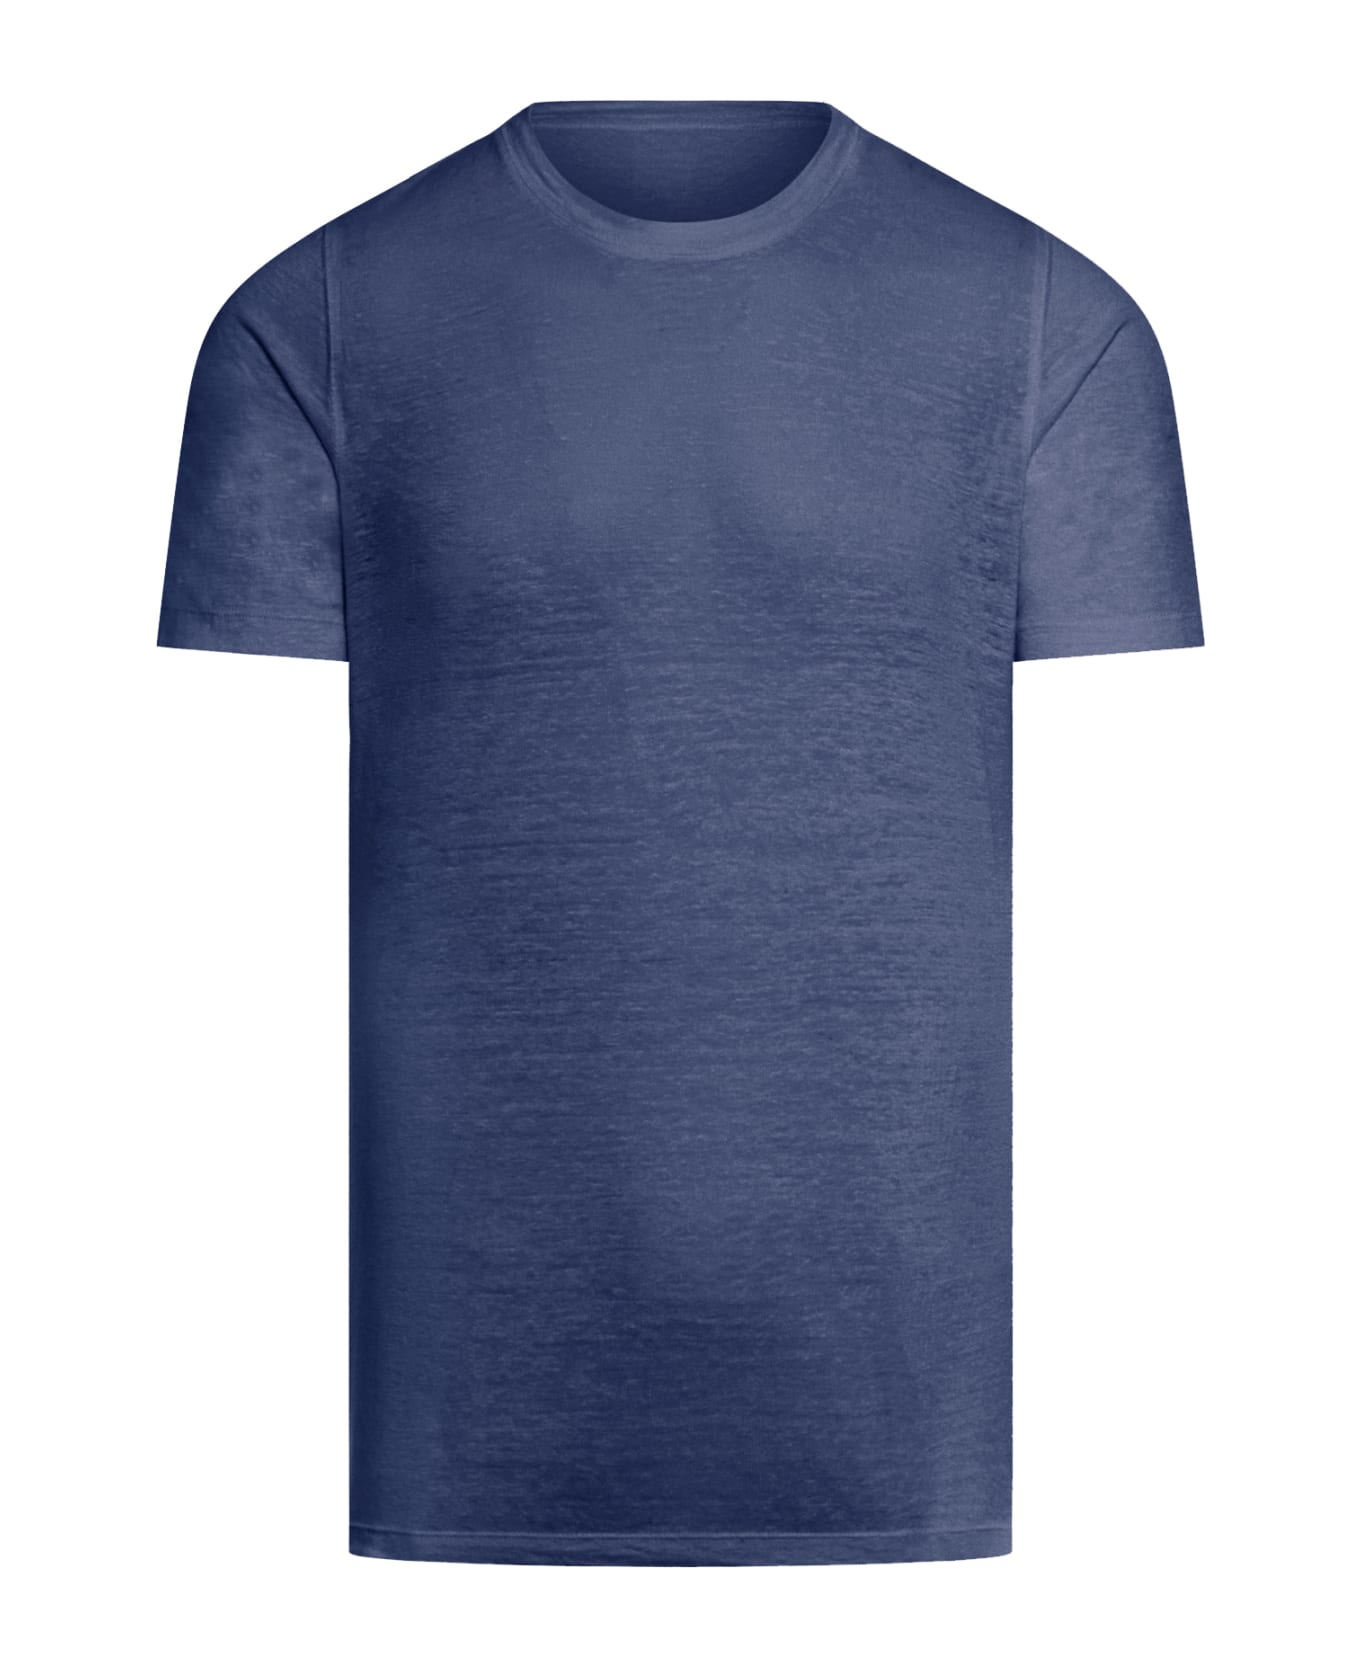 120% Lino Short Sleeve Men Tshirt - F Navy Blue